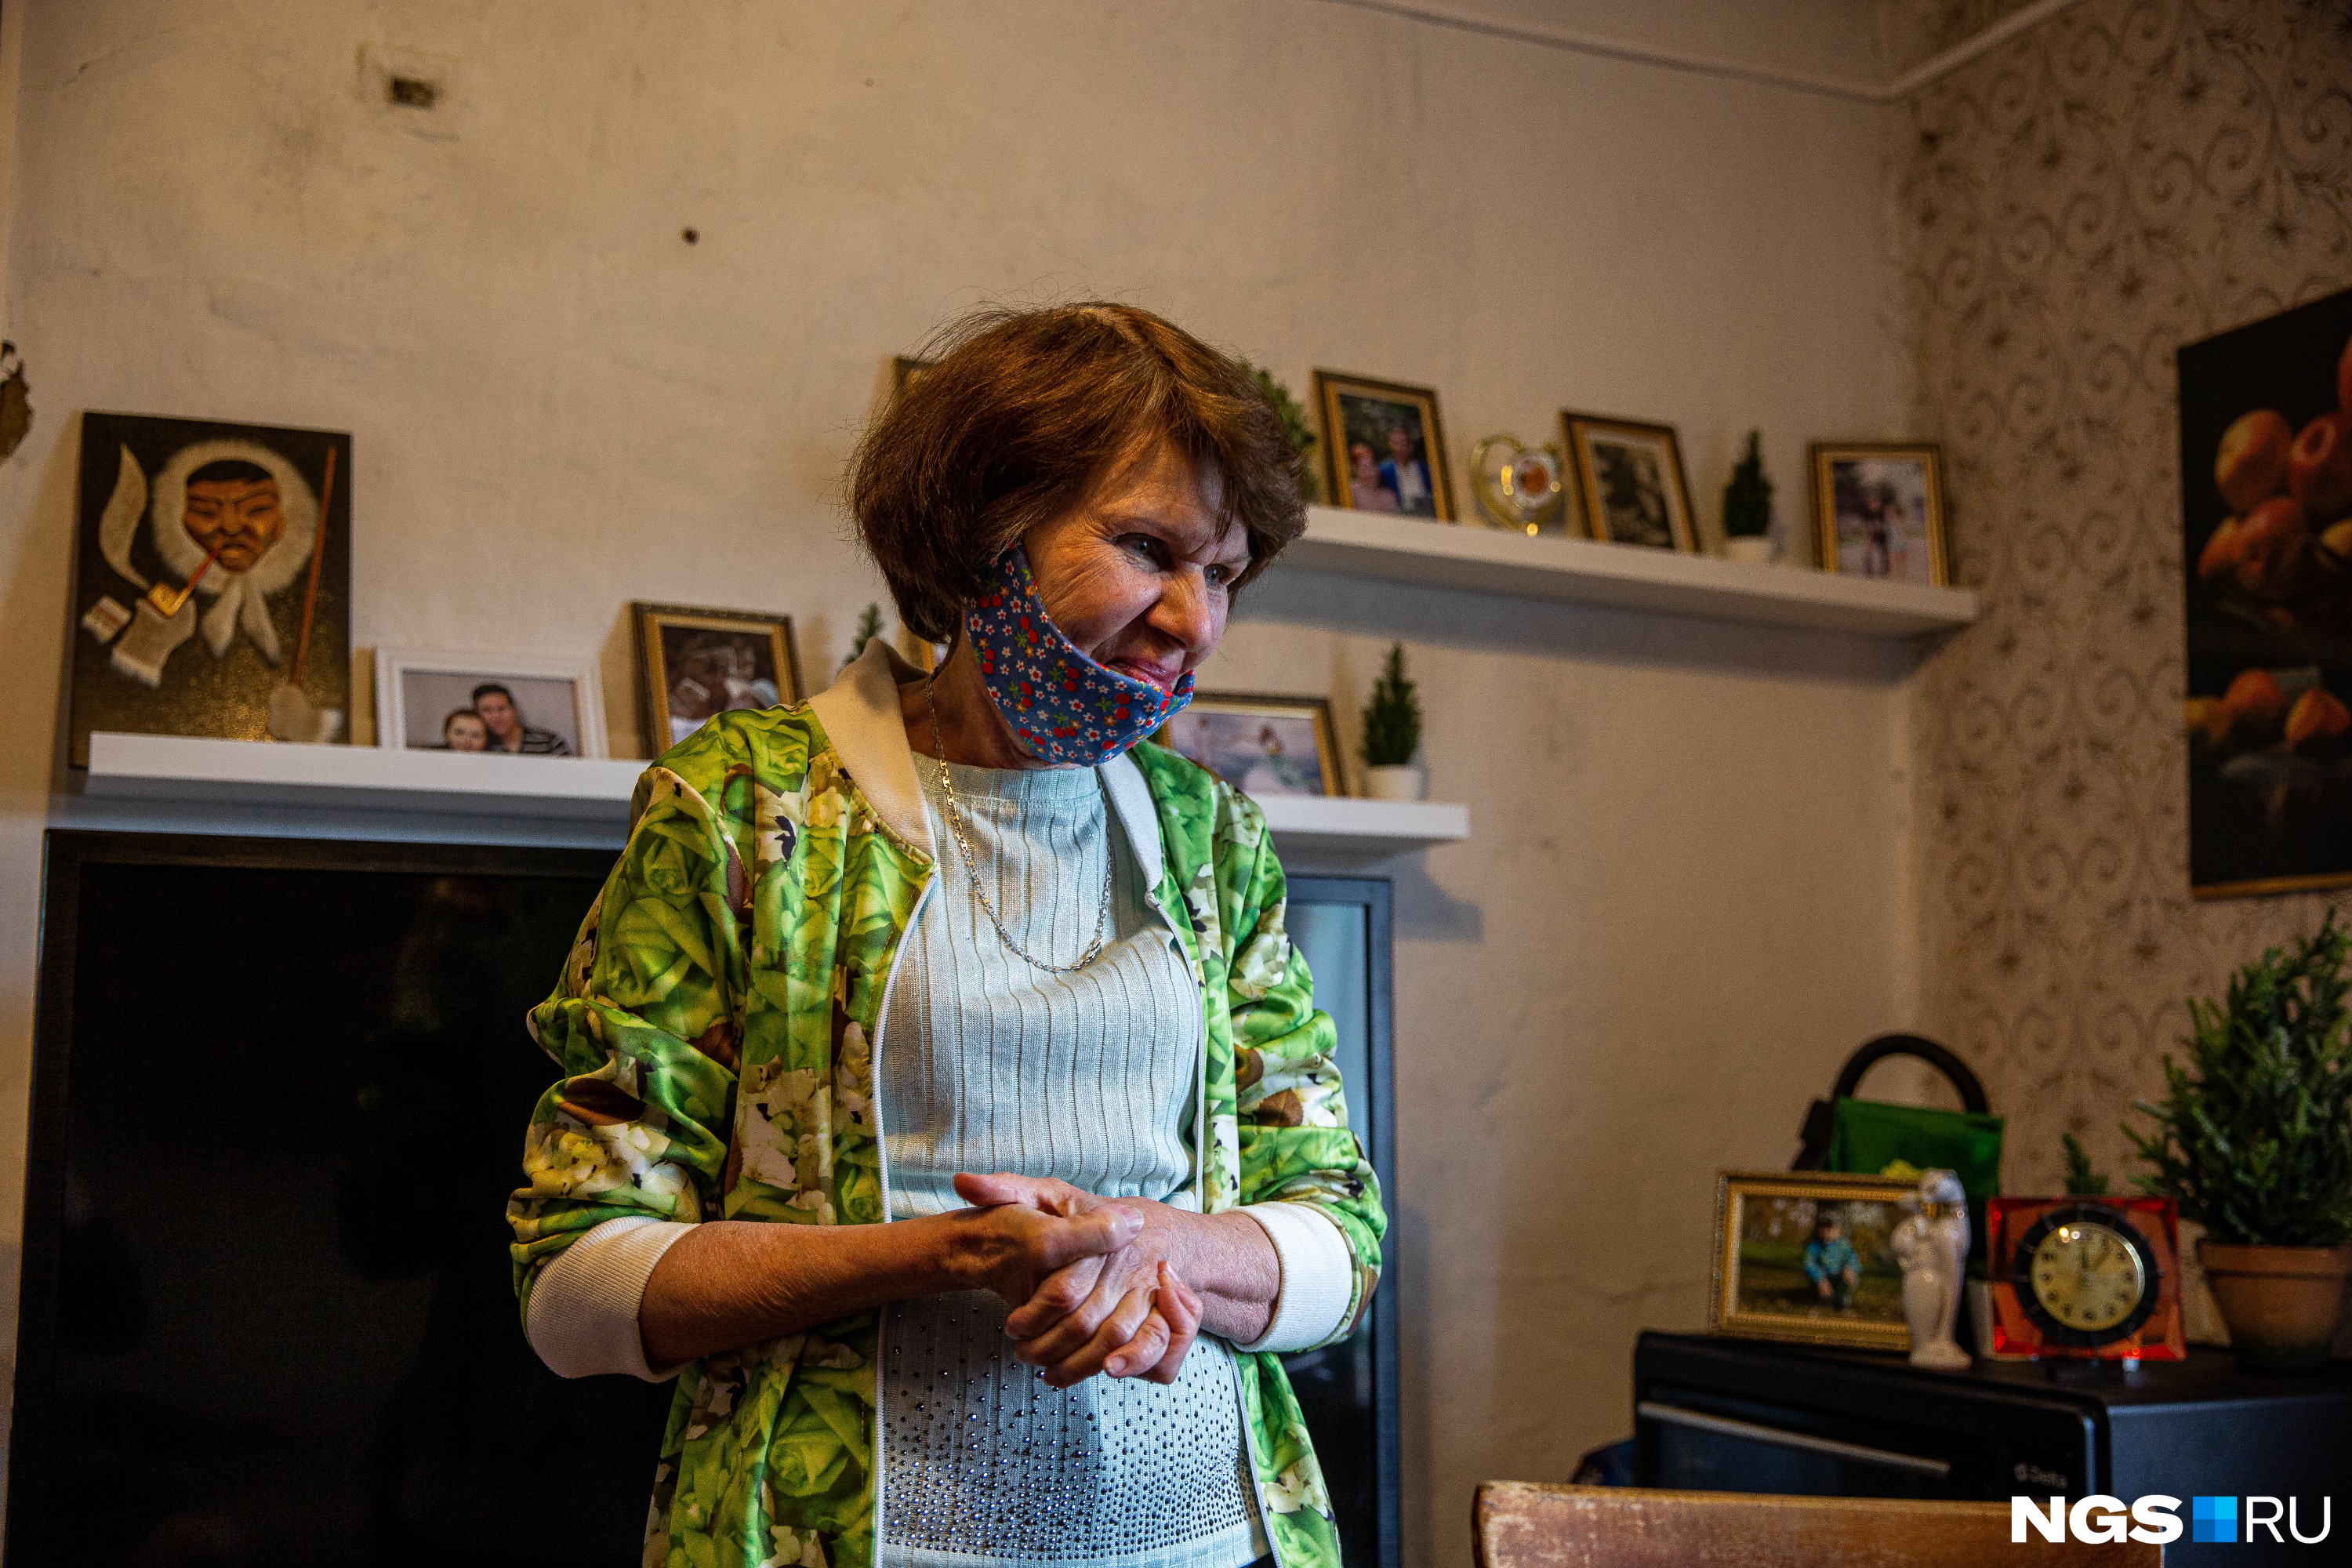 Ирине Верхградской — 67 лет, больше тридцати из которых она мастерит своих кукол